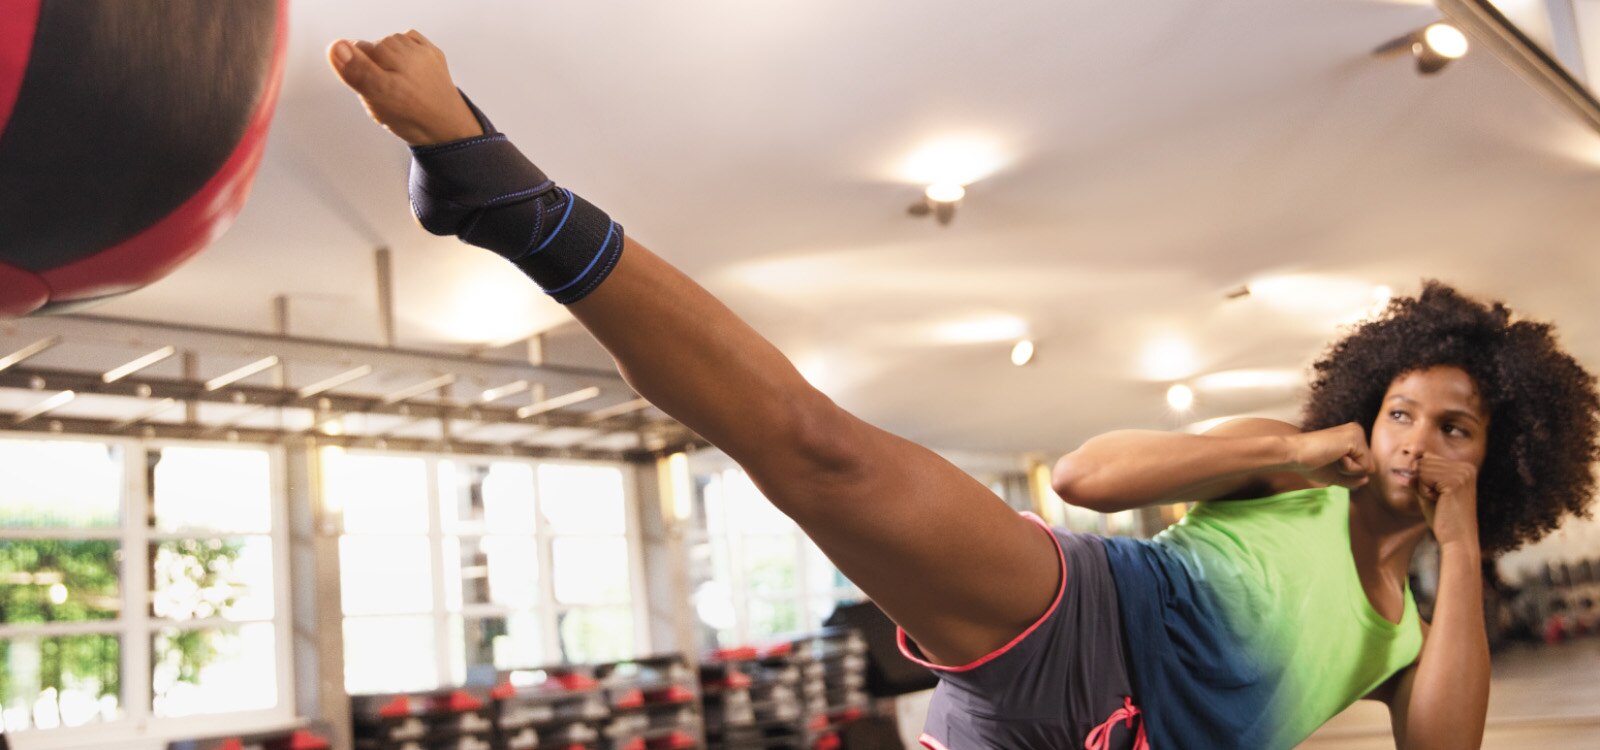 Kobieta kopiąca piłkę na siłowni podczas treningu z ortezą stawu skokowego Actimove Sports Edition z krzyżującymi się paskami